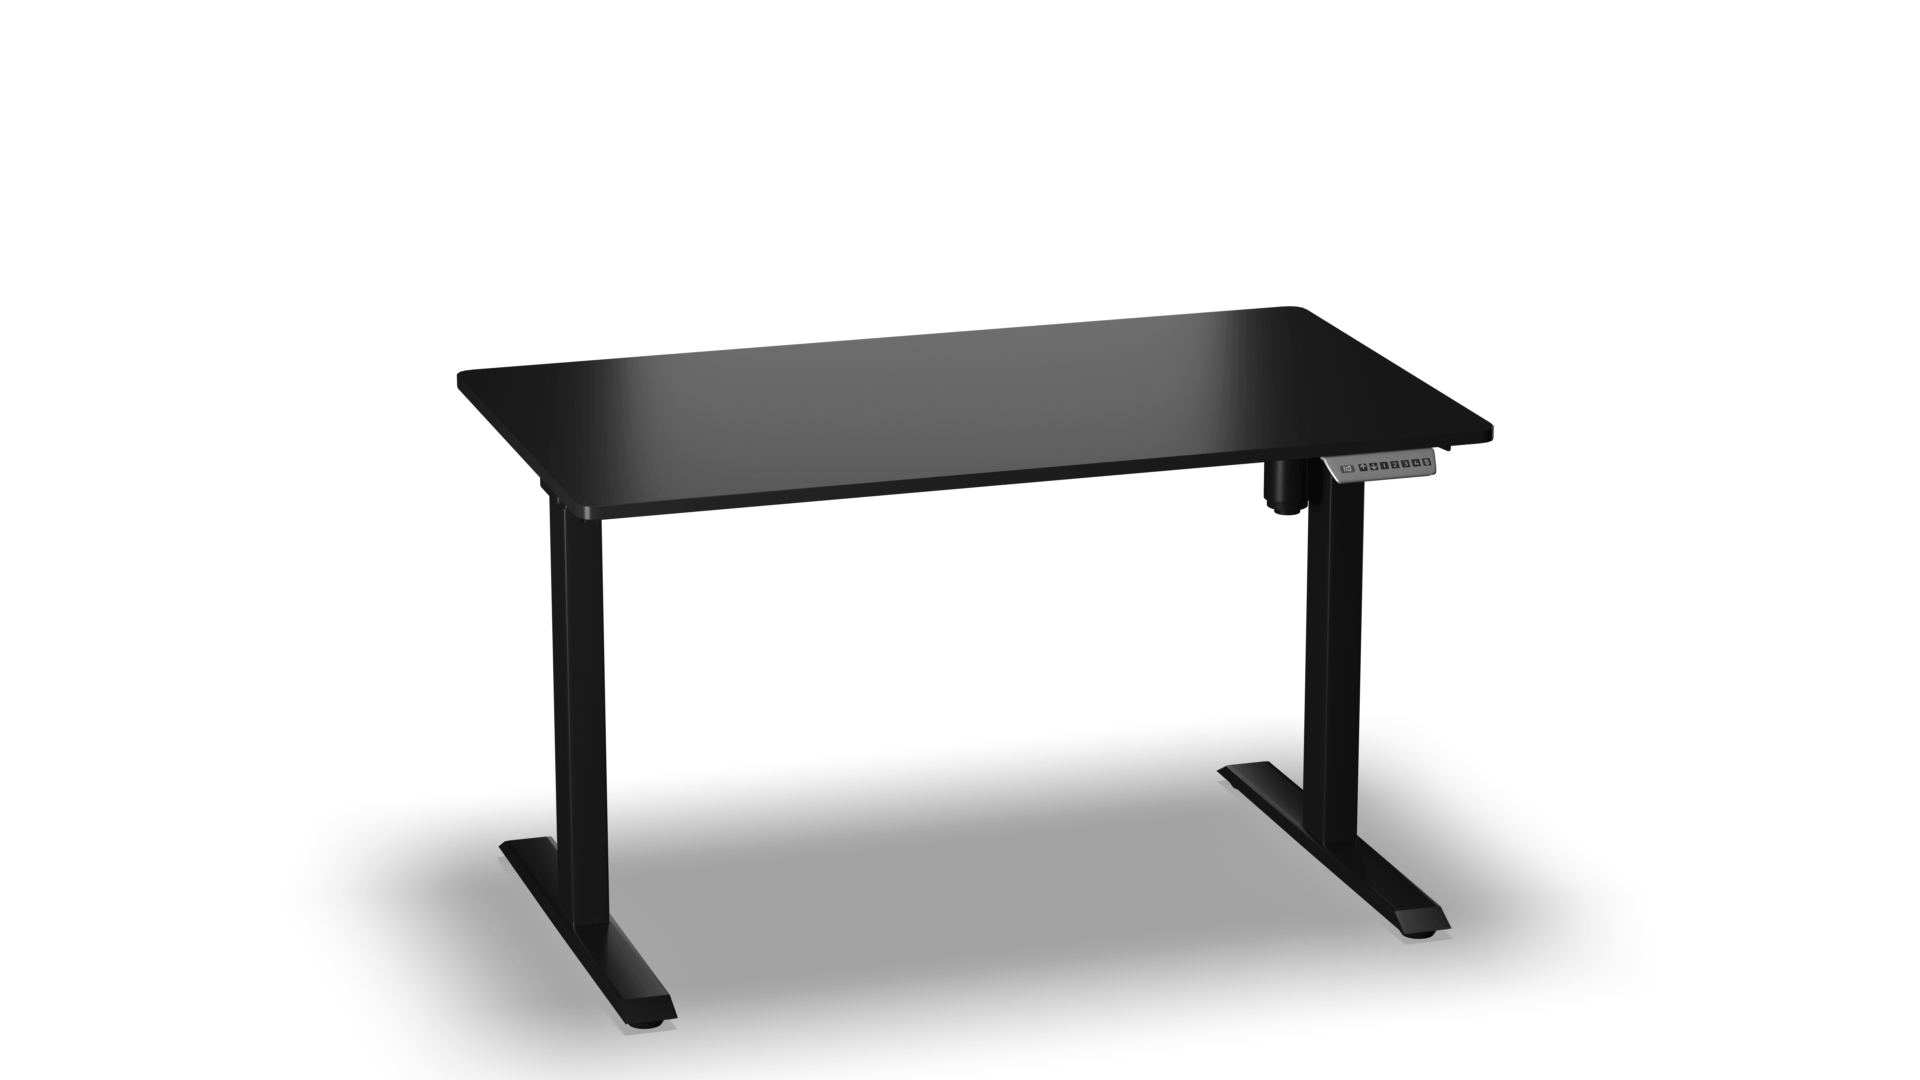  โต๊ะปรับระดับสูงต่ำ E-TABLE UNIVERSAL